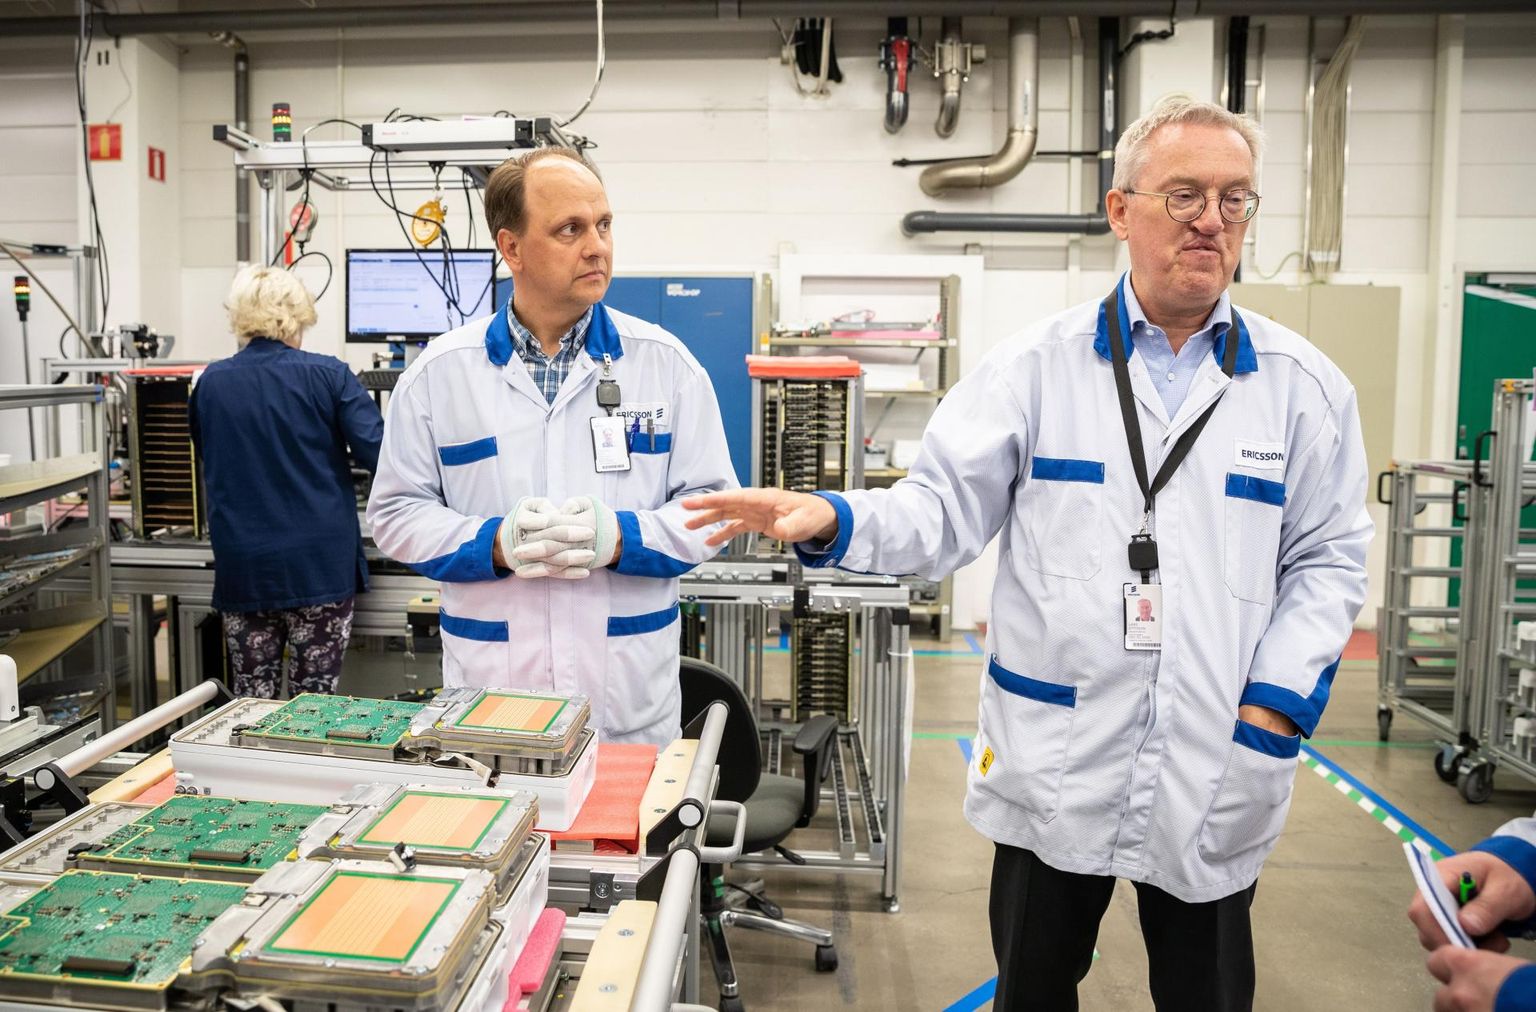 Ericssoni Tallinna tehase juhi Lars Göran Ottosoni (paremal) sõnul on siinne tehas ettevõttele võtmetähtsusega. Tema kõrval seisab tootmisdirektor Kuldar Agu. 